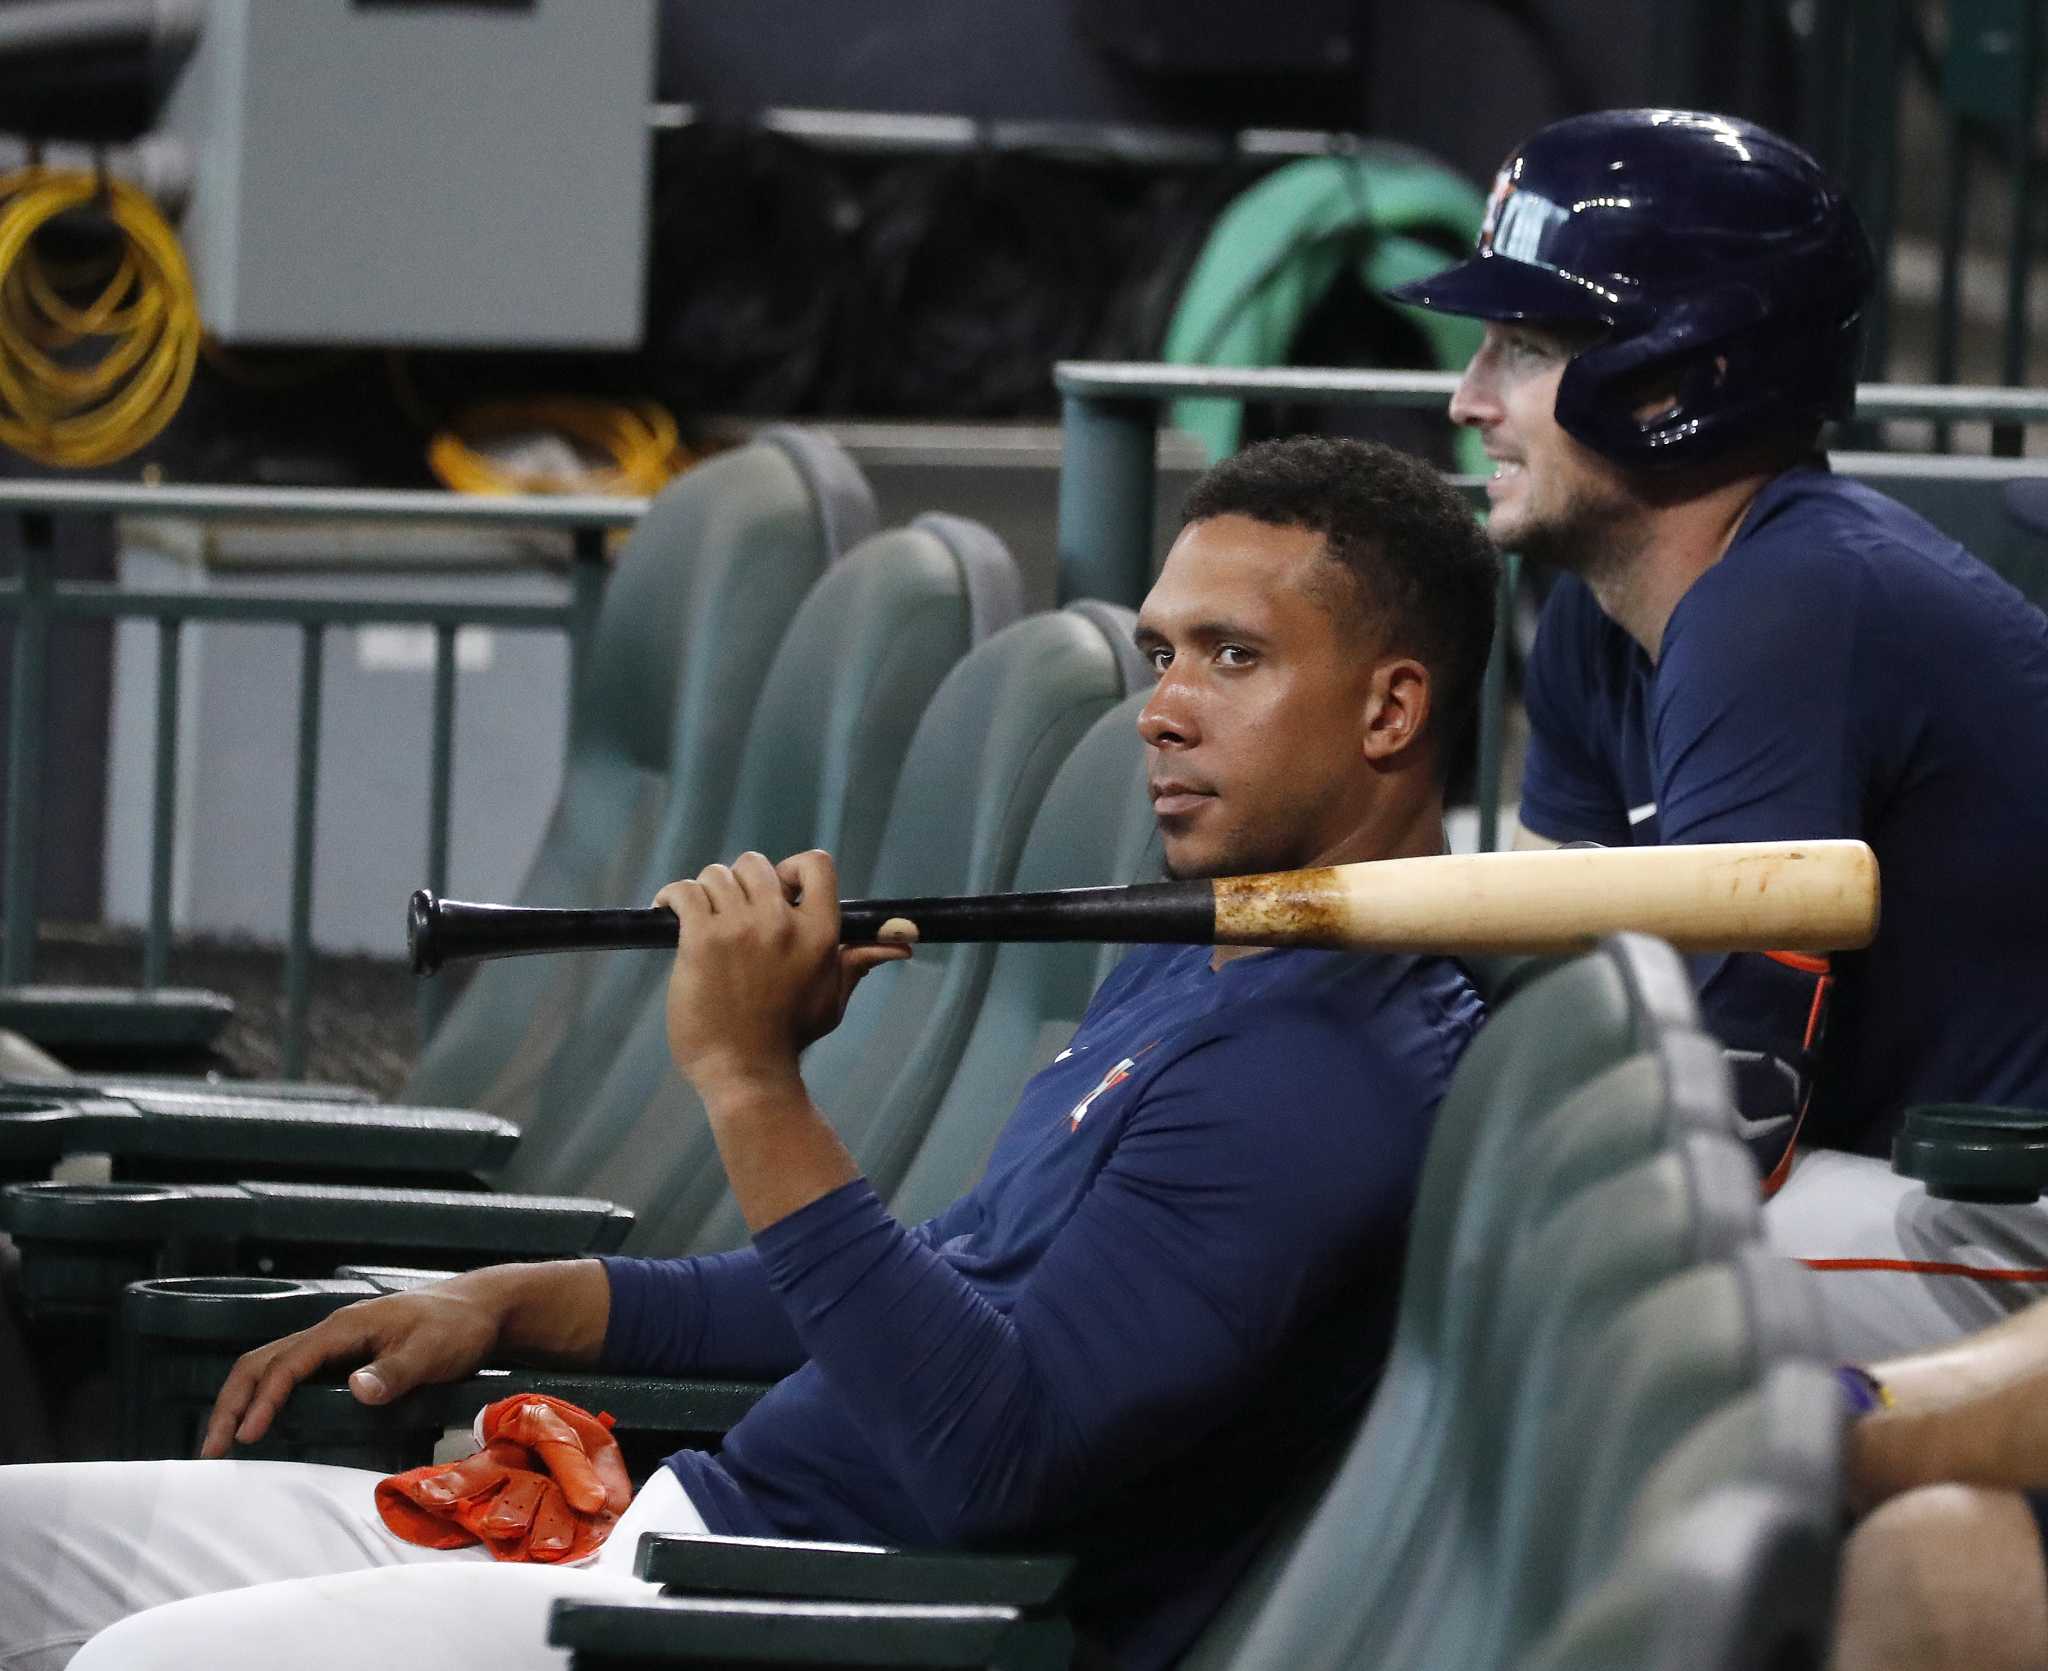 Michael Brantley injury: Astros outfielder shut down indefinitely